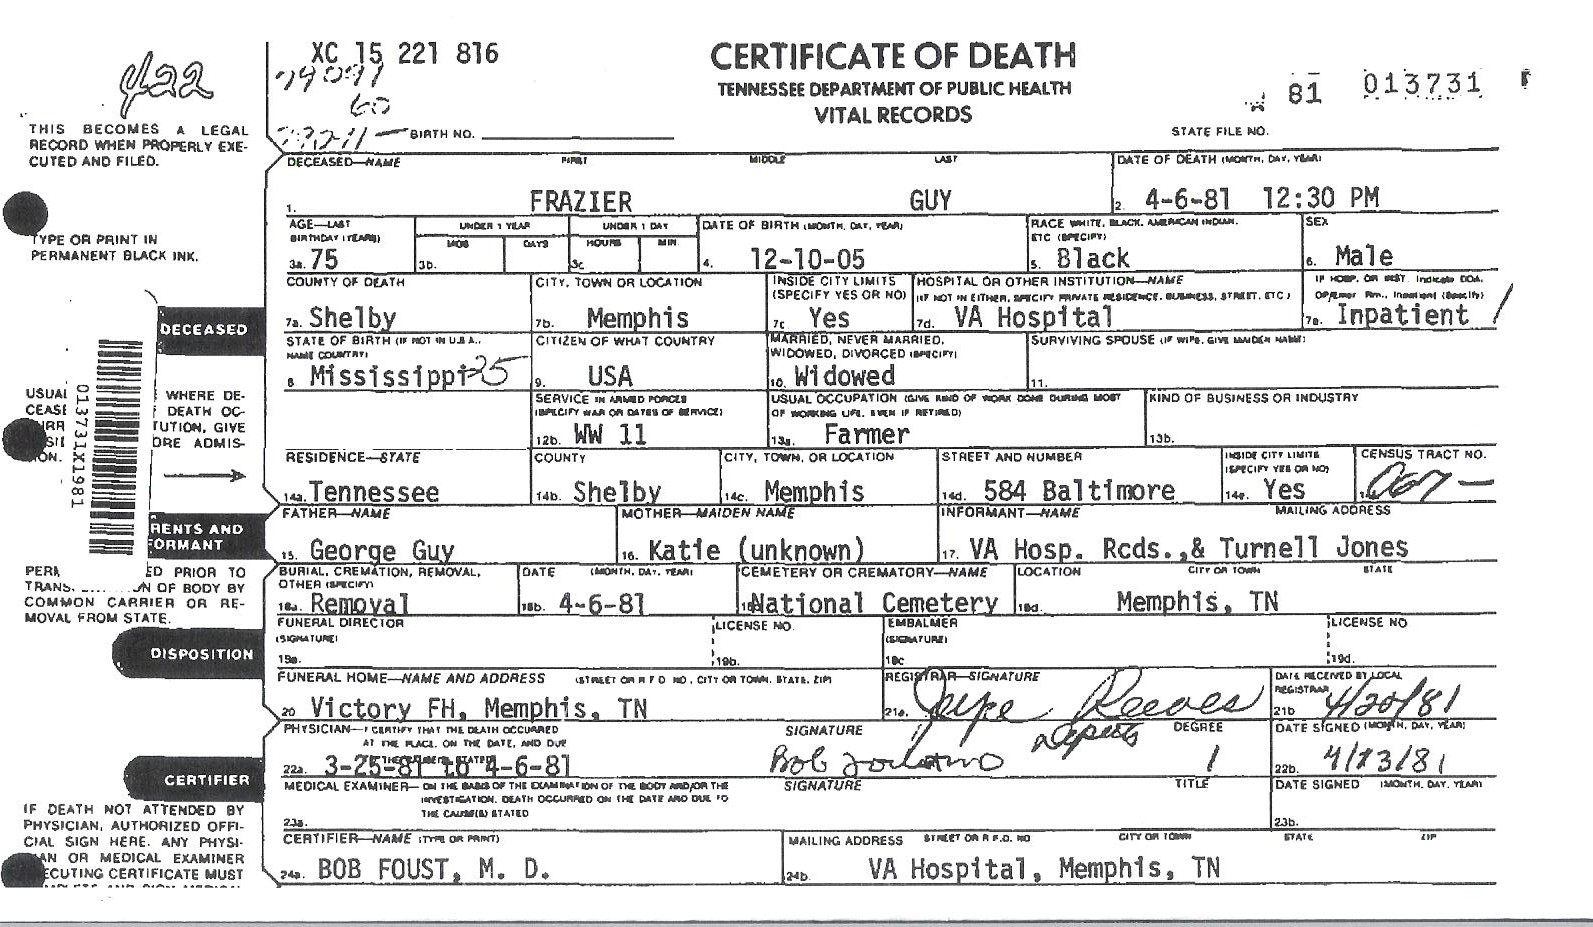 Frazier Guy's Death Certificate